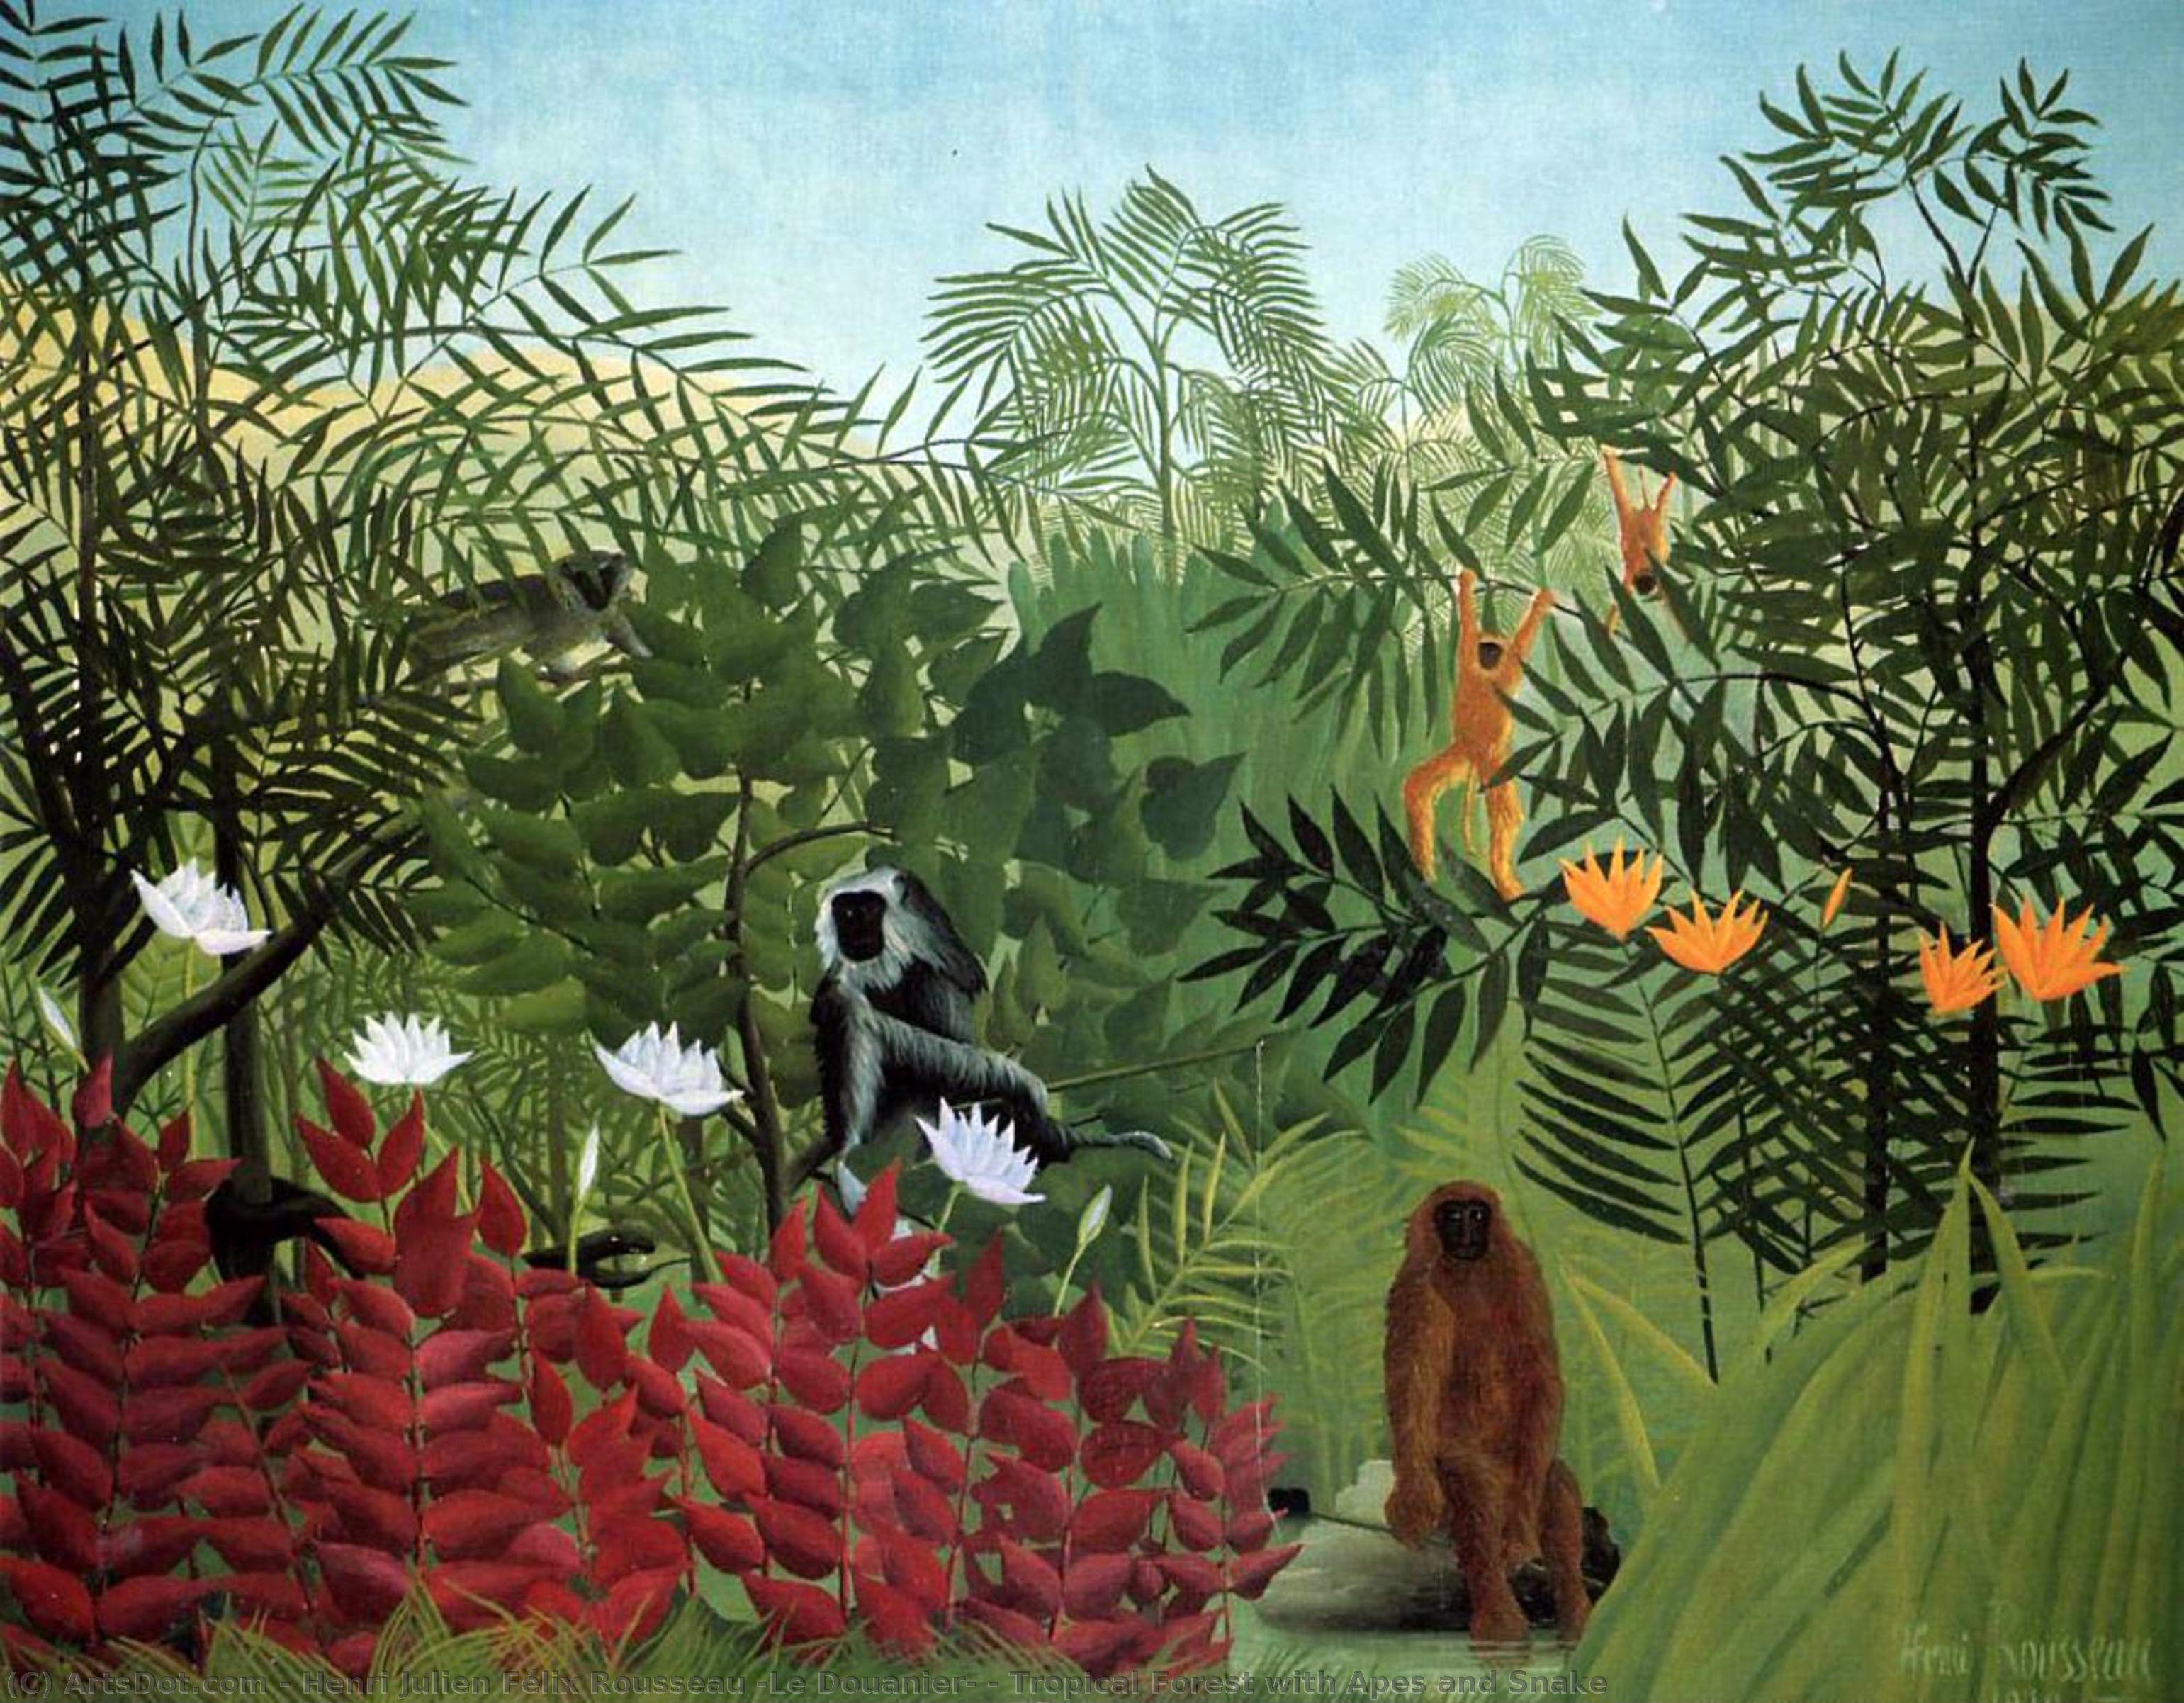 Wikioo.org - Bách khoa toàn thư về mỹ thuật - Vẽ tranh, Tác phẩm nghệ thuật Henri Julien Félix Rousseau (Le Douanier) - Tropical Forest with Apes and Snake